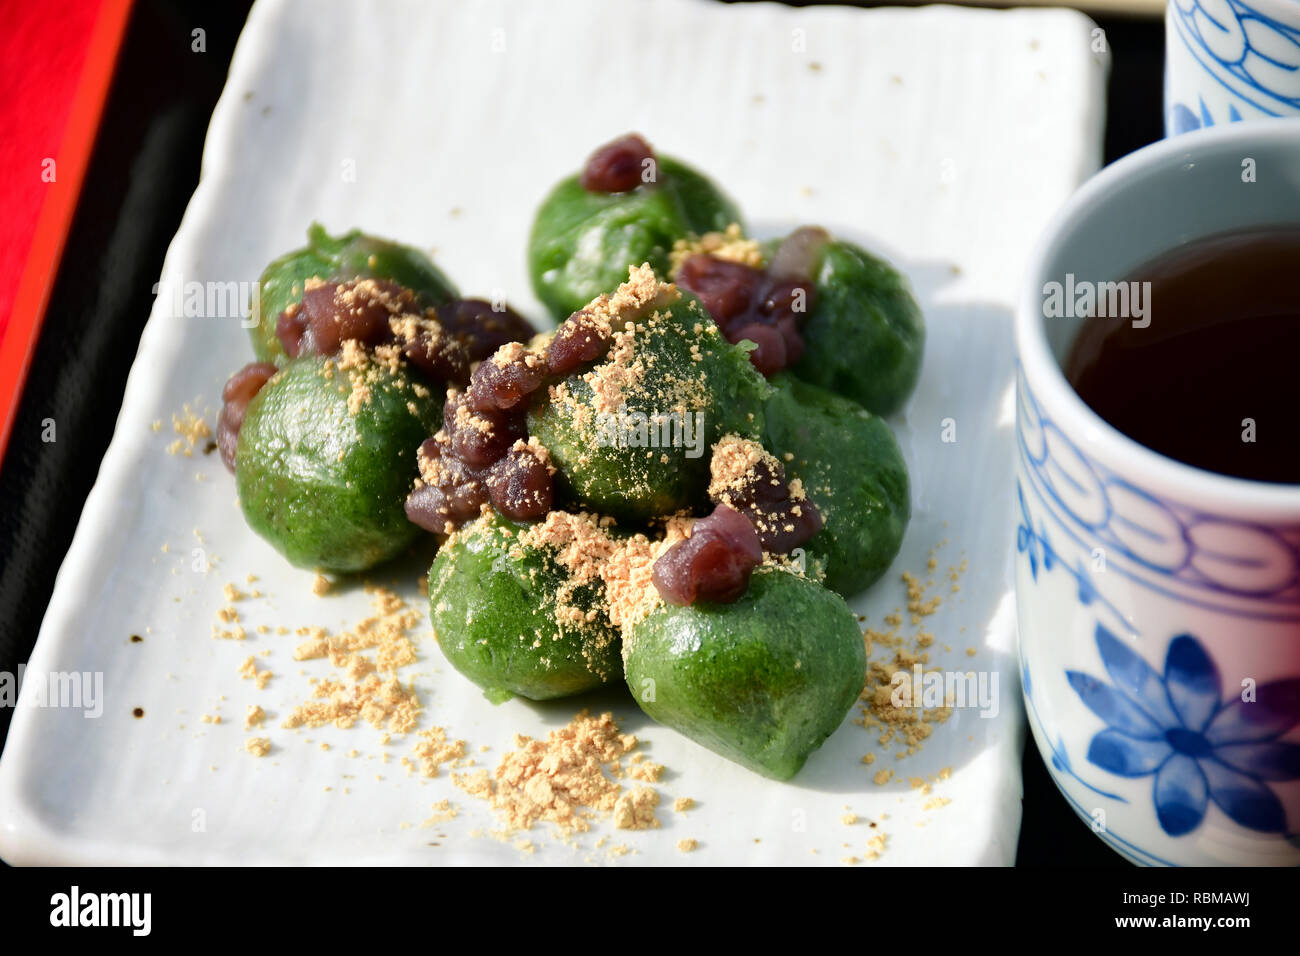 Japanische Dango, traditionelle japanische Süßigkeiten. Dango grüner Tee Knödel Aromen mit roten Bohnen Paste (Anko) mit heißem Tee serviert. Stockfoto